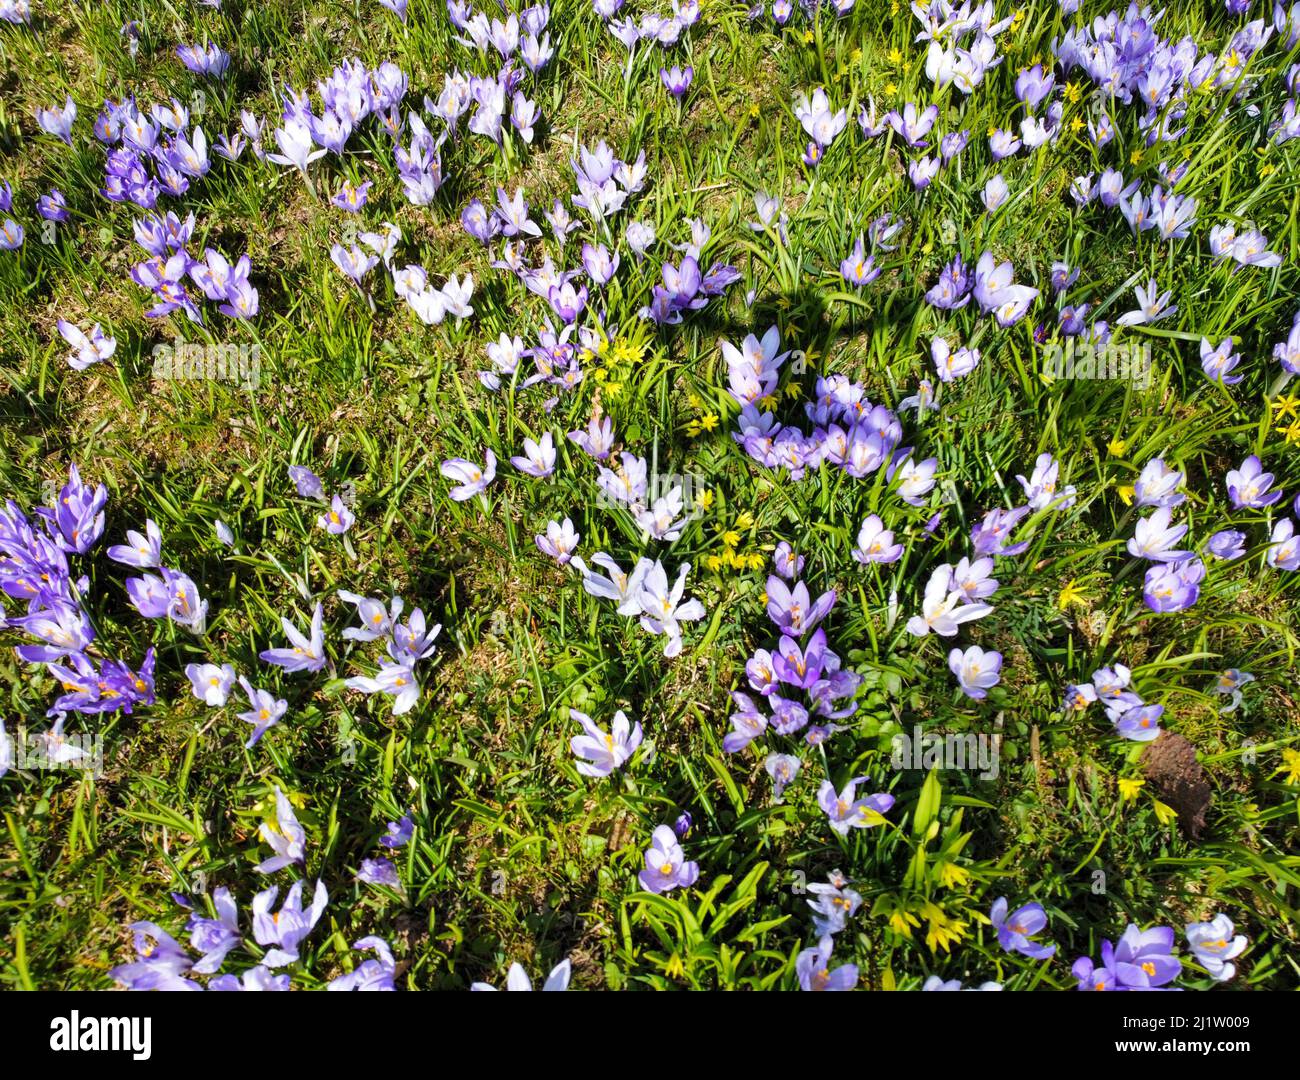 Crocus meadow blooms in the garden Stock Photo